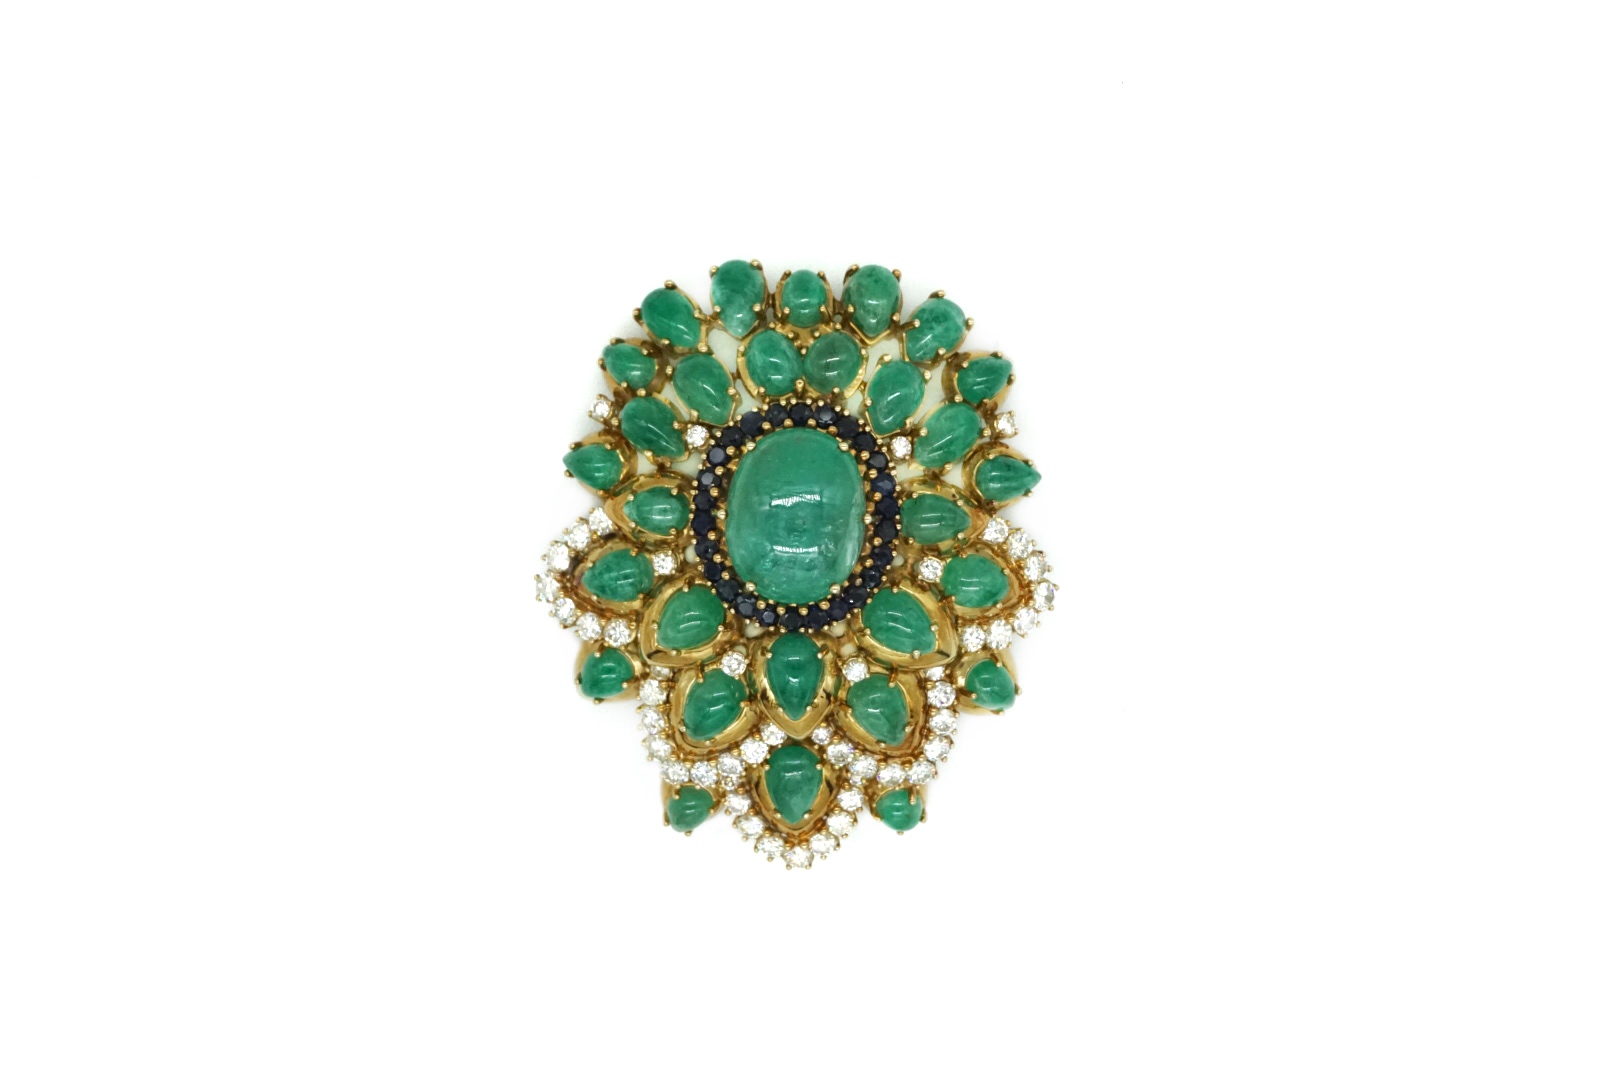 Cabochon Emerald, Diamond and Gold Brooch - Eleuteri